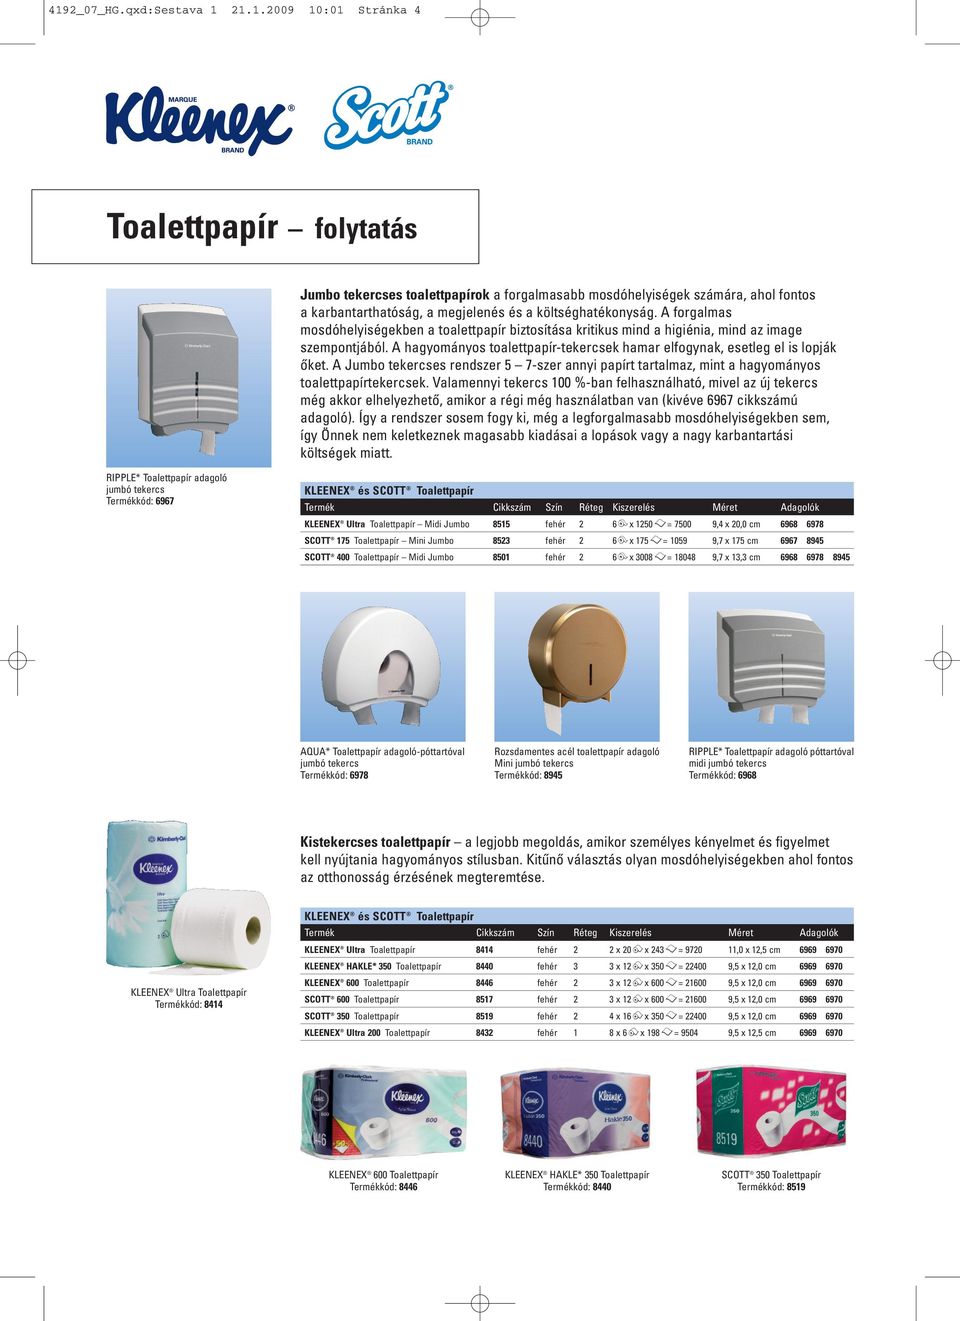 A Jumbo tekercses rendszer 5 7-szer annyi papírt tartalmaz, mint a hagyományos toalettpapírtekercsek.